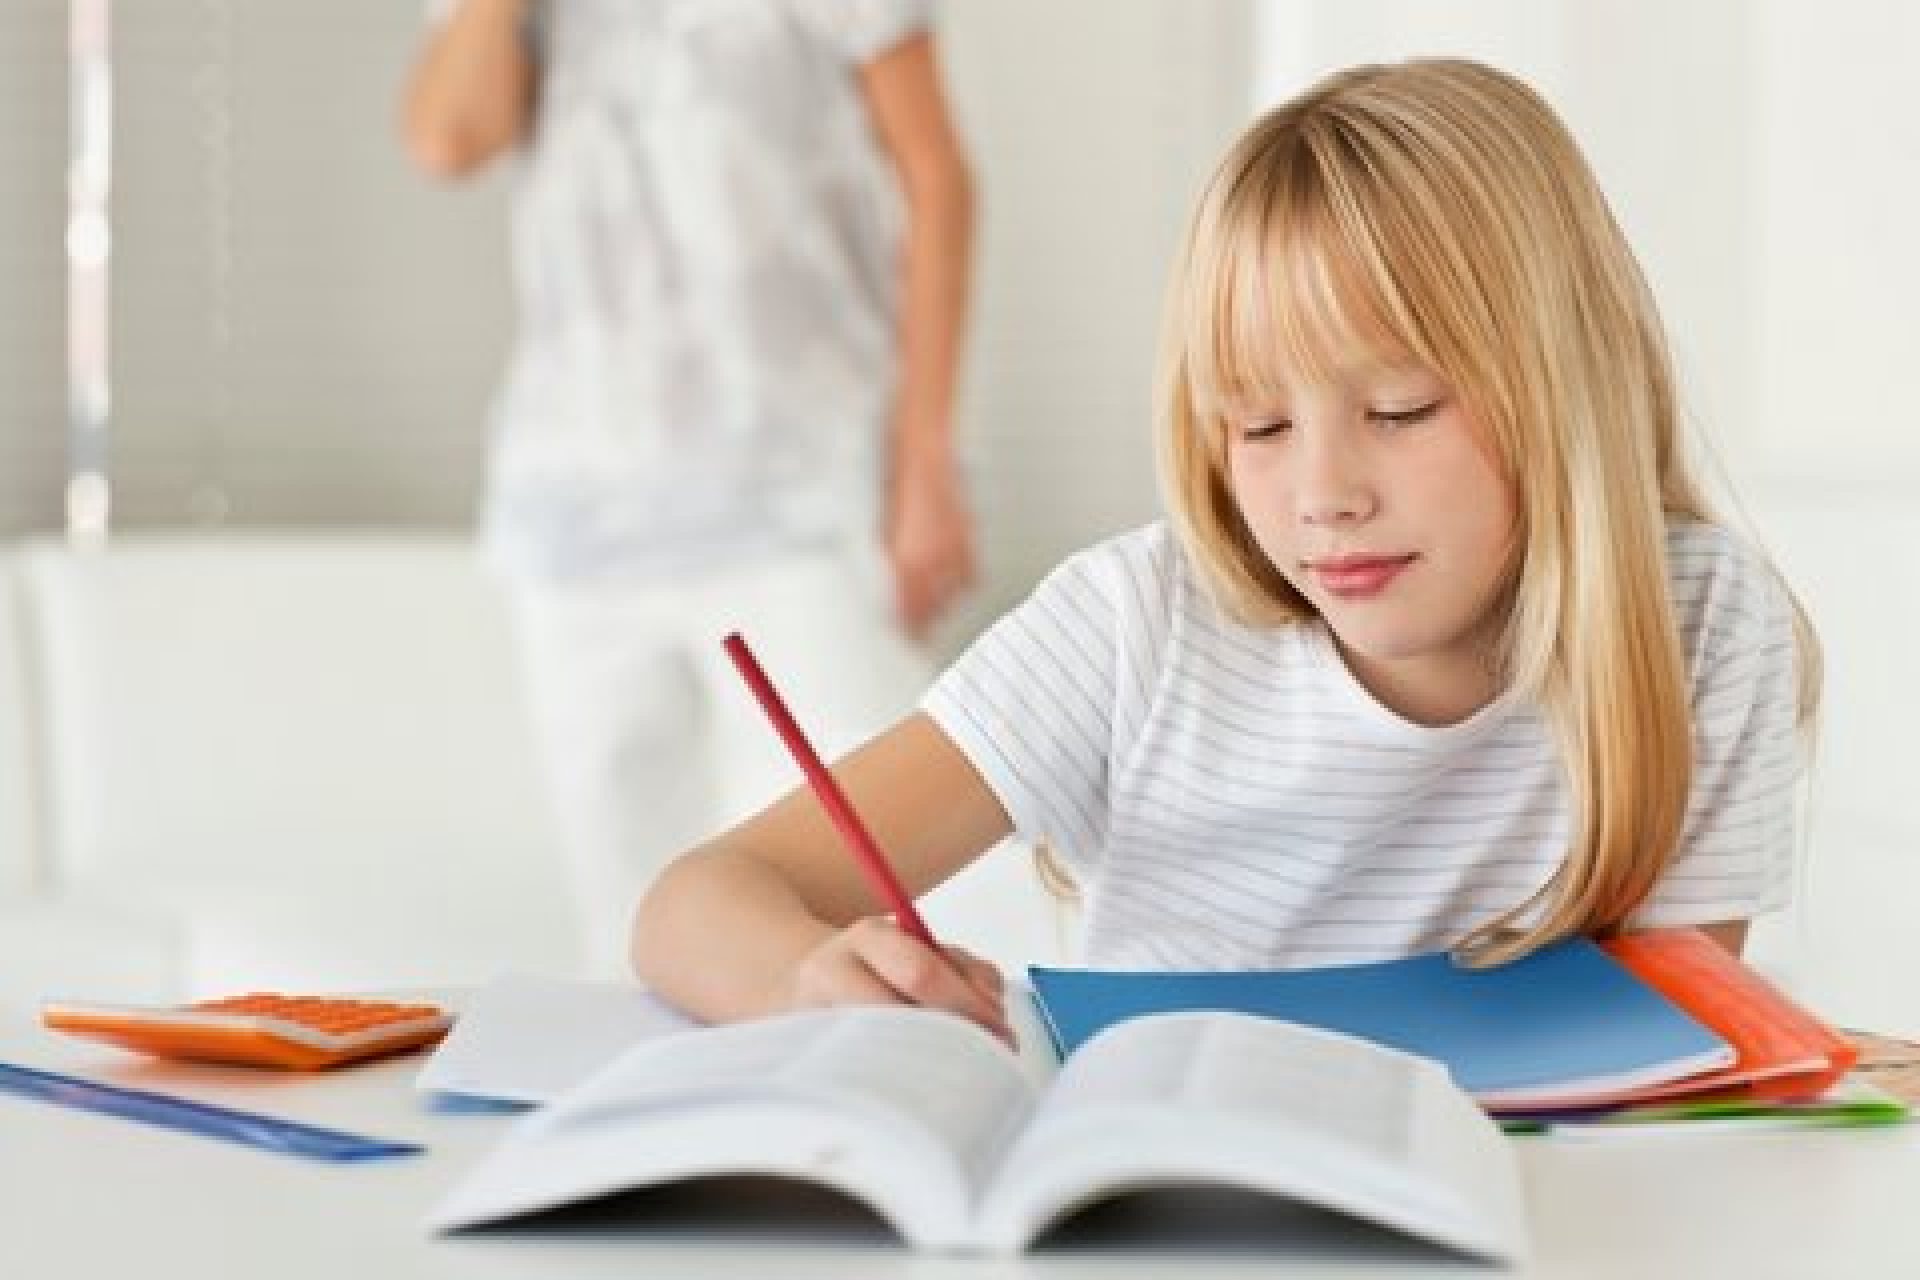 Girl doing homework, Mom in background